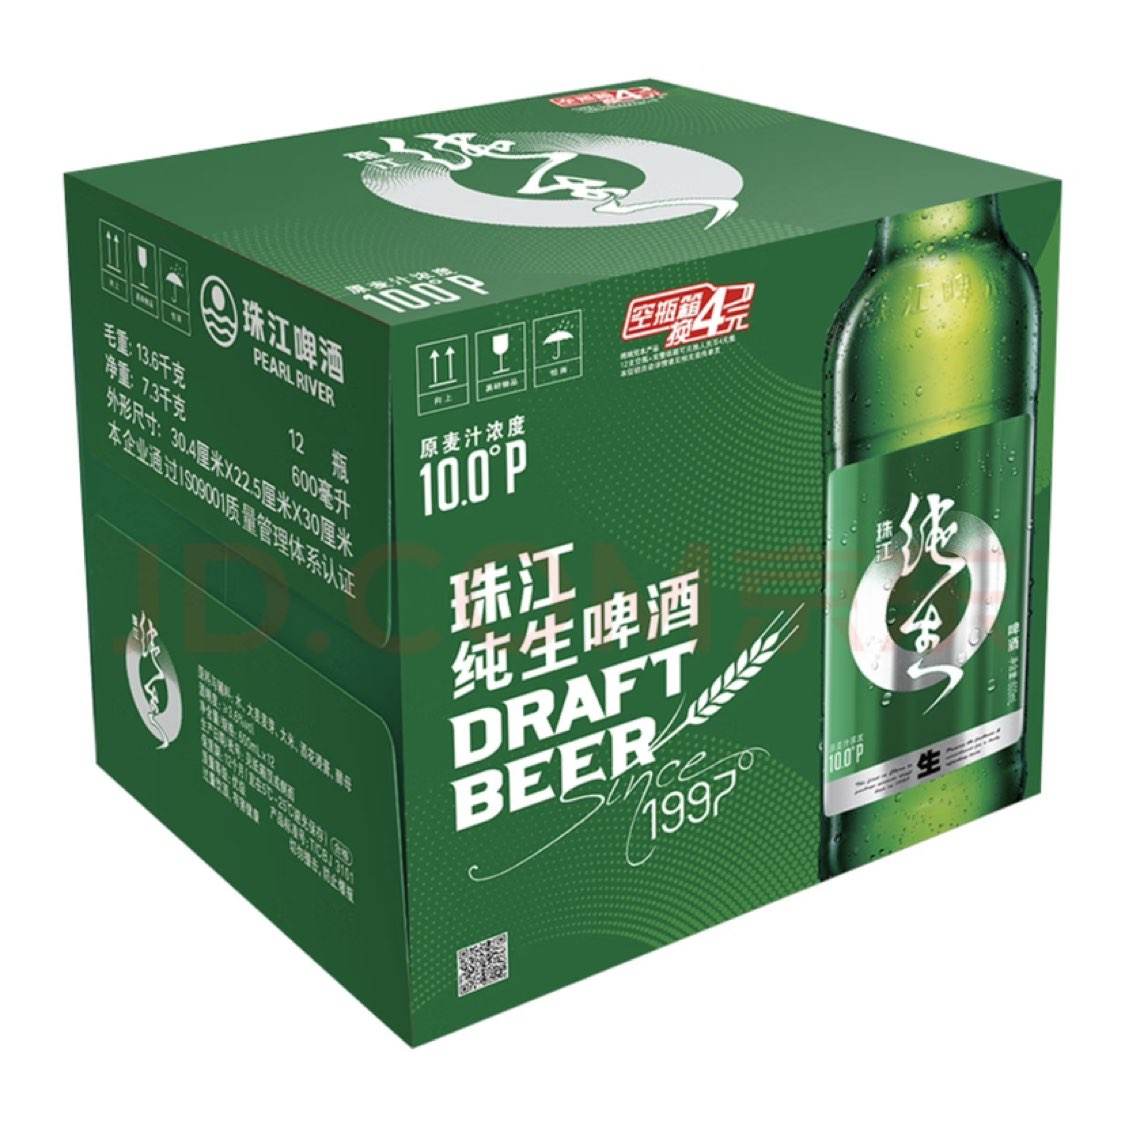 珠江啤酒10度 珠江纯生啤酒 600ml*12瓶 整箱装 49.4元